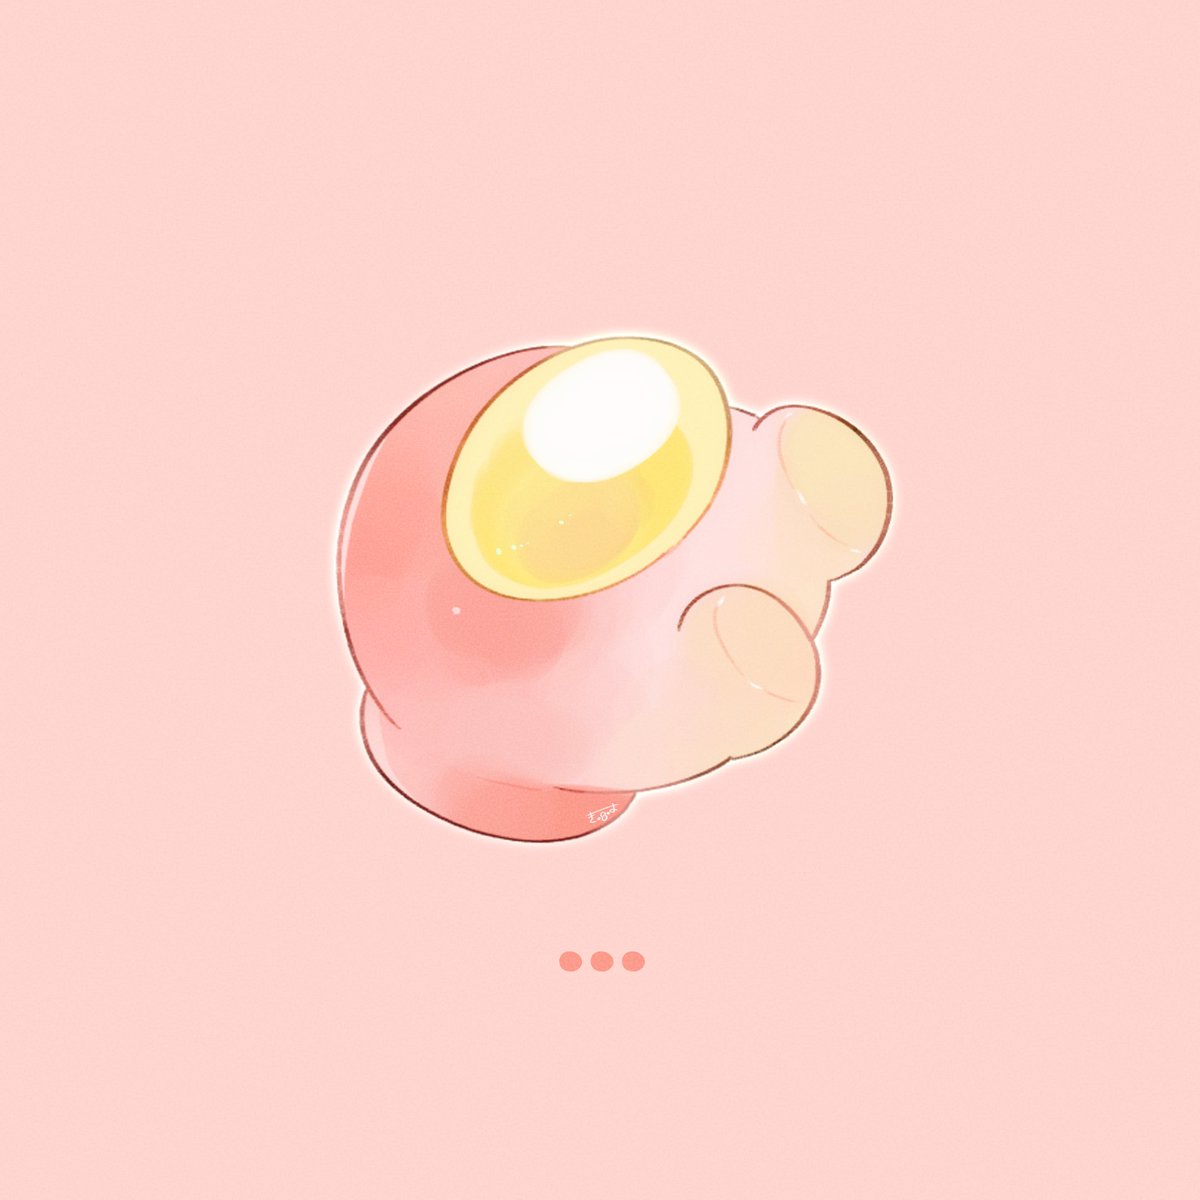 Crew(Among Us) 「Peach colour」|てんみやきよのイラスト